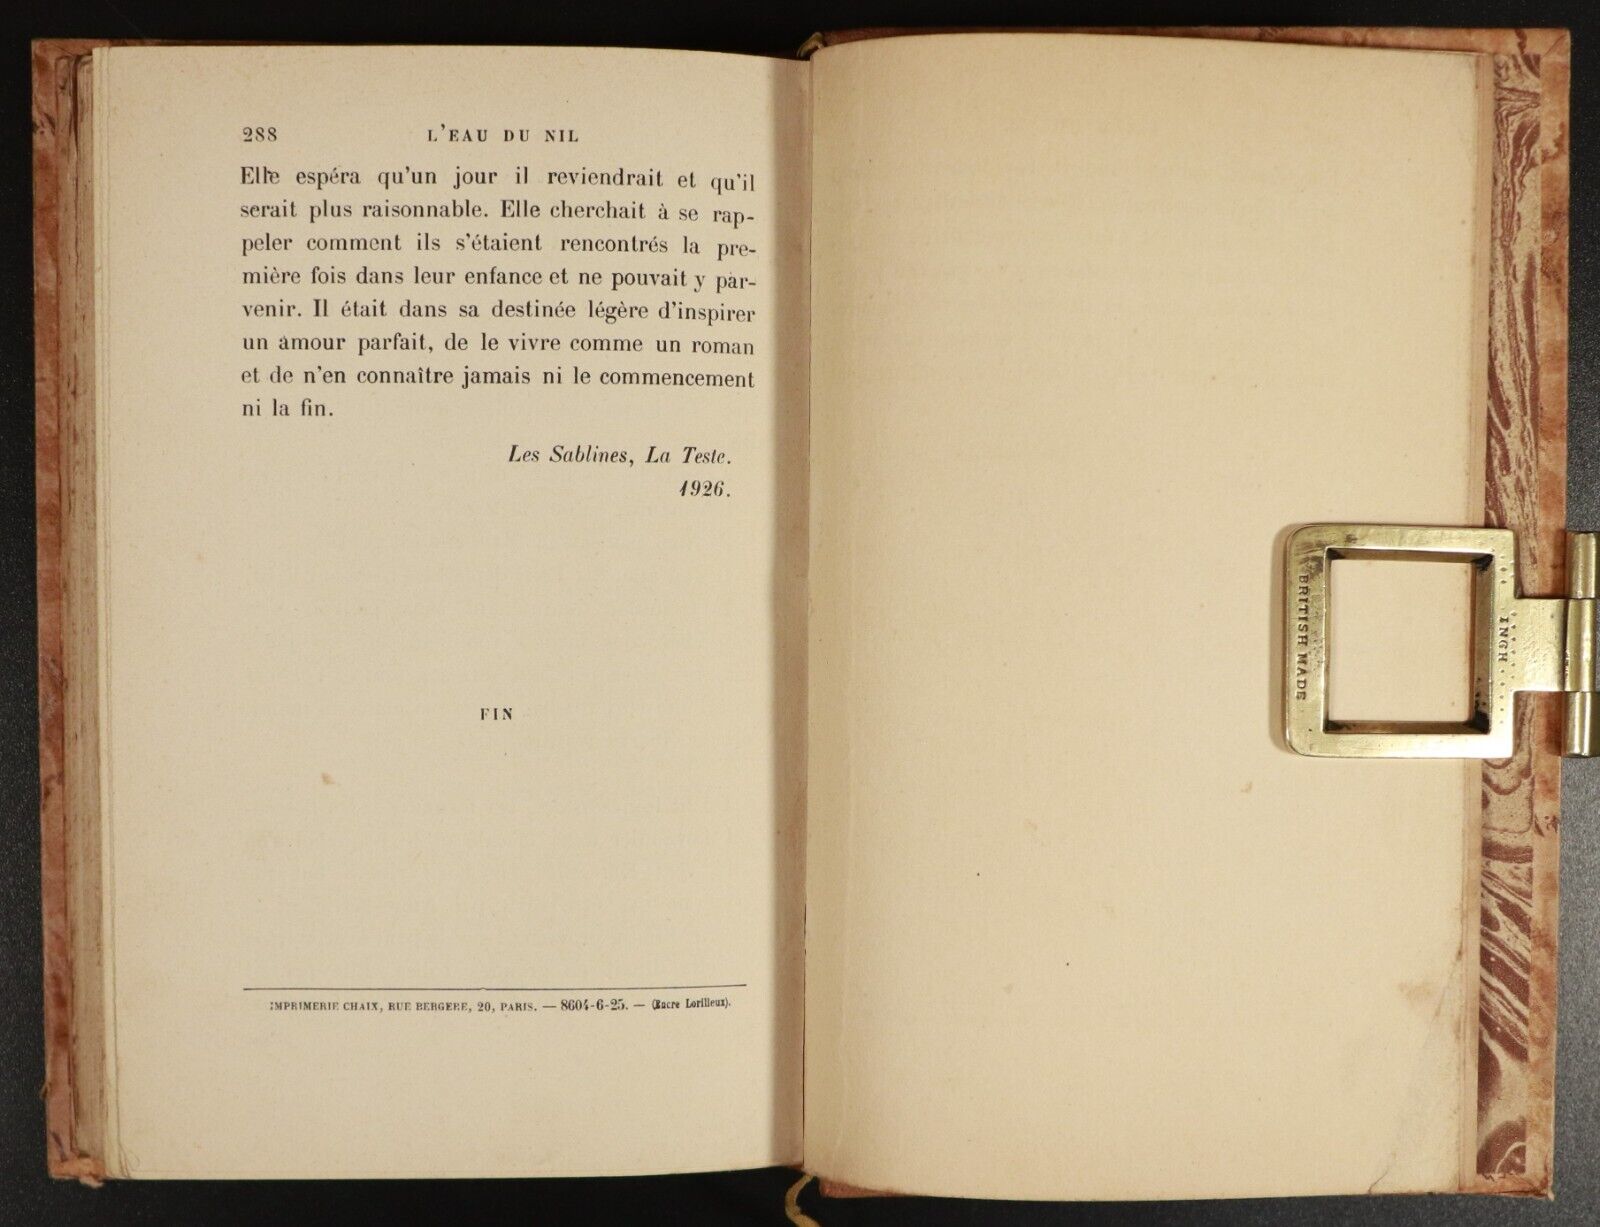 1926 L'Eau Du Nil by Pierre Frondaie Antiquarian French Fiction Book